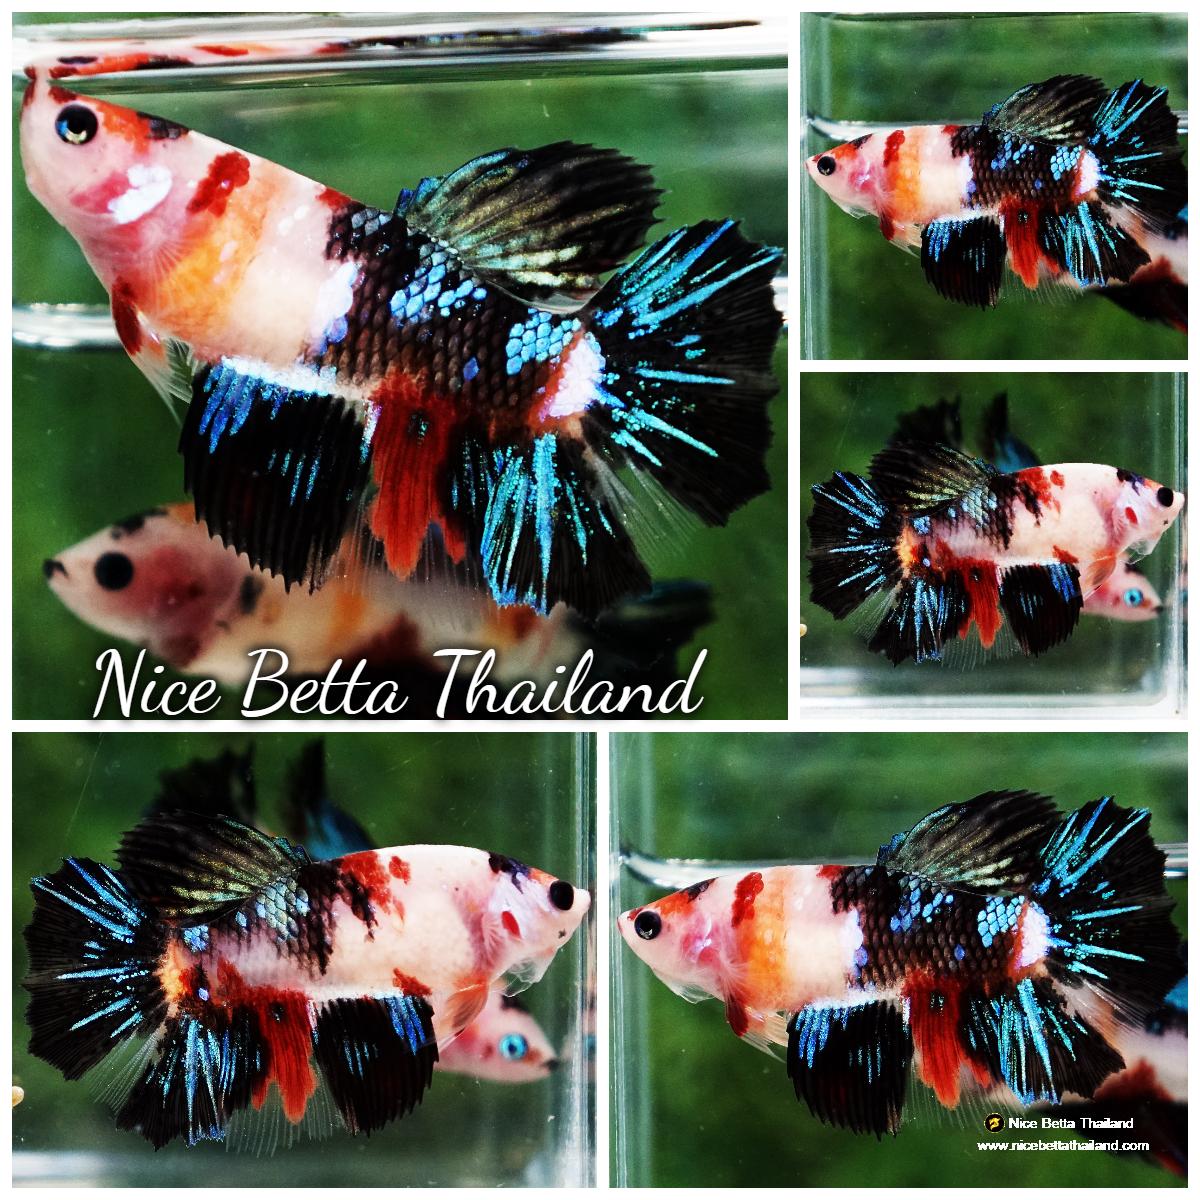 Betta fish Queen Black Emerald Nemo HM